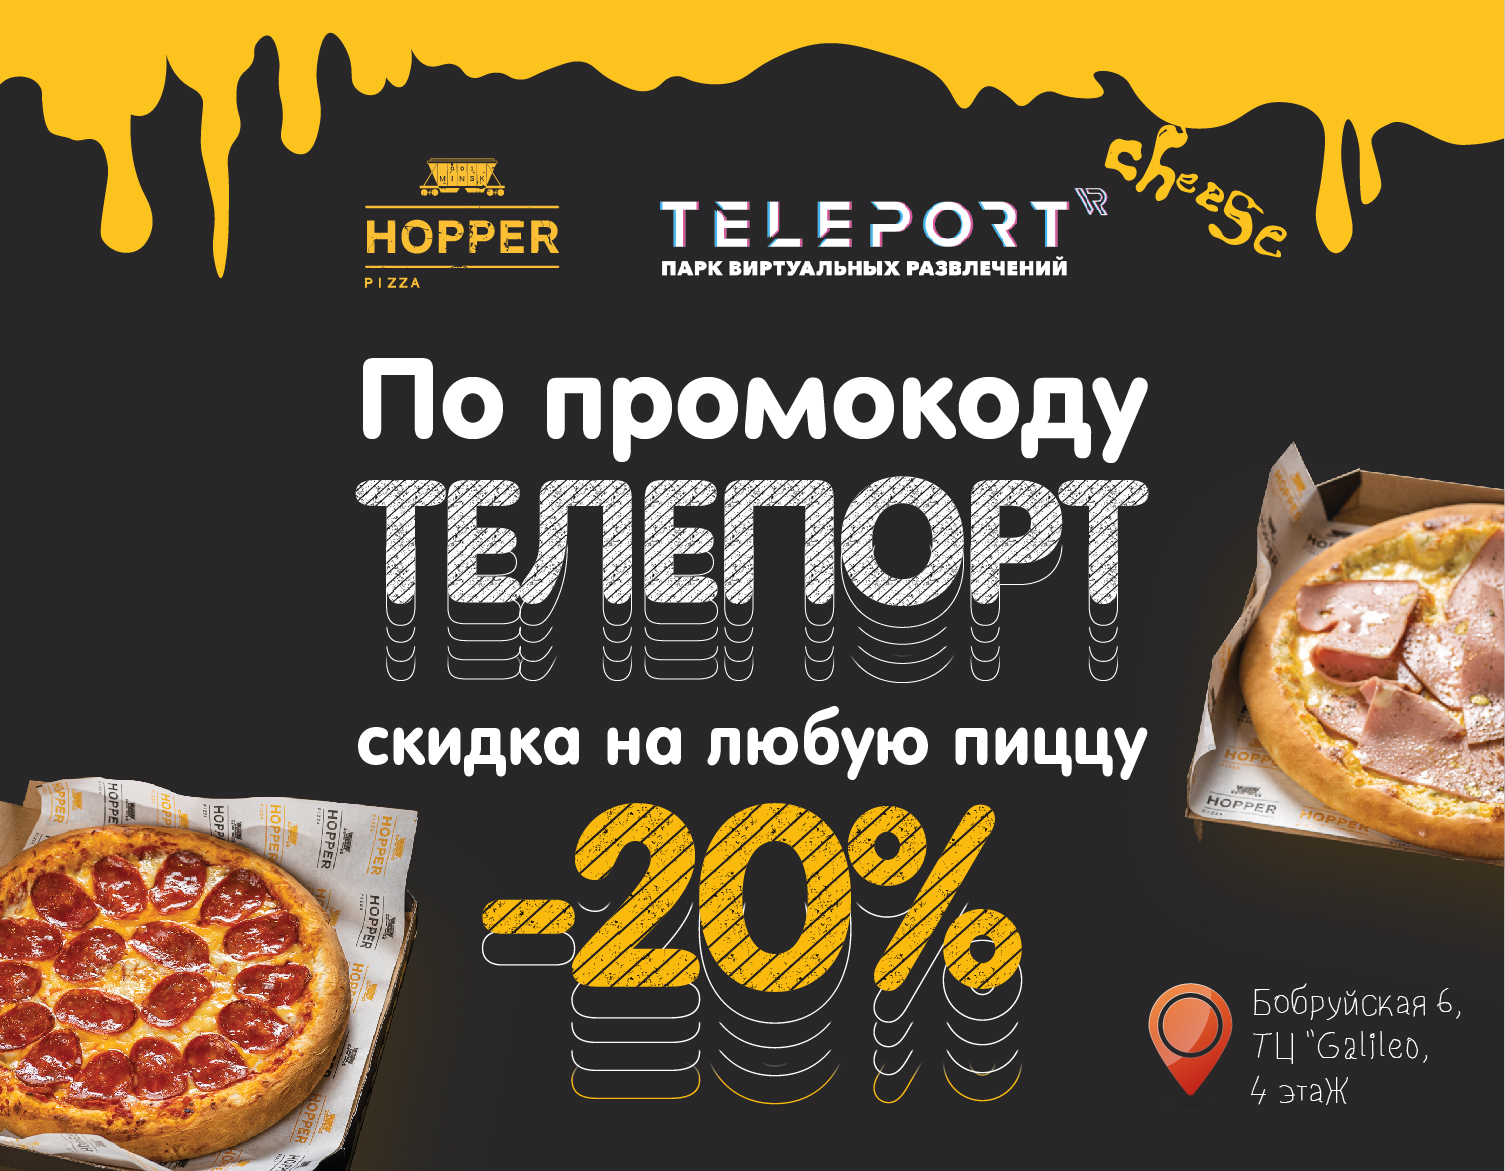 СКИДКА 20% ОТ HOPPER PIZZA